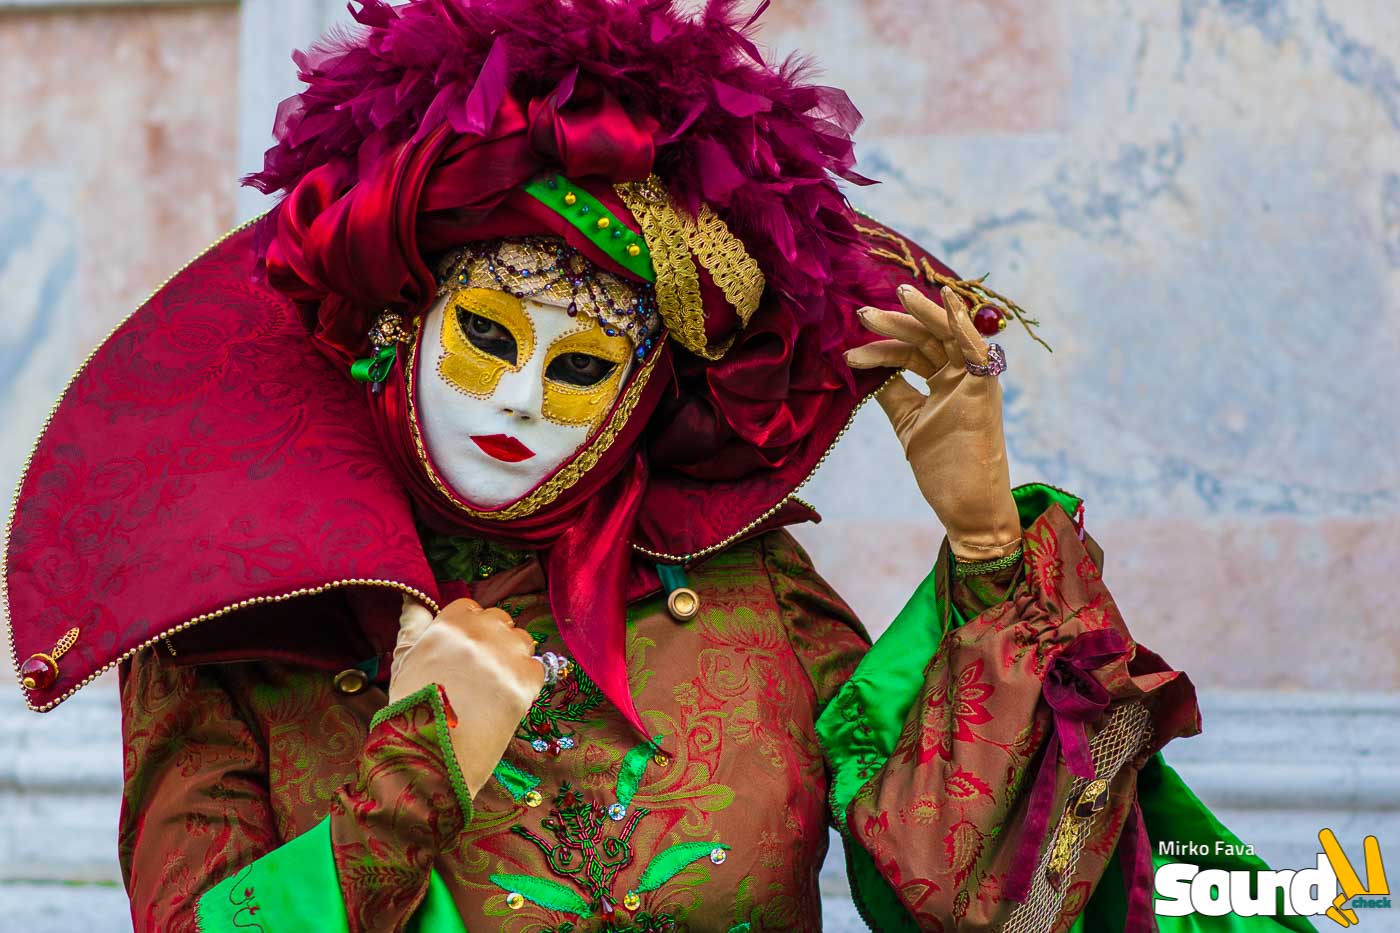 Carnevale di Venezia: curiosità e aneddoti